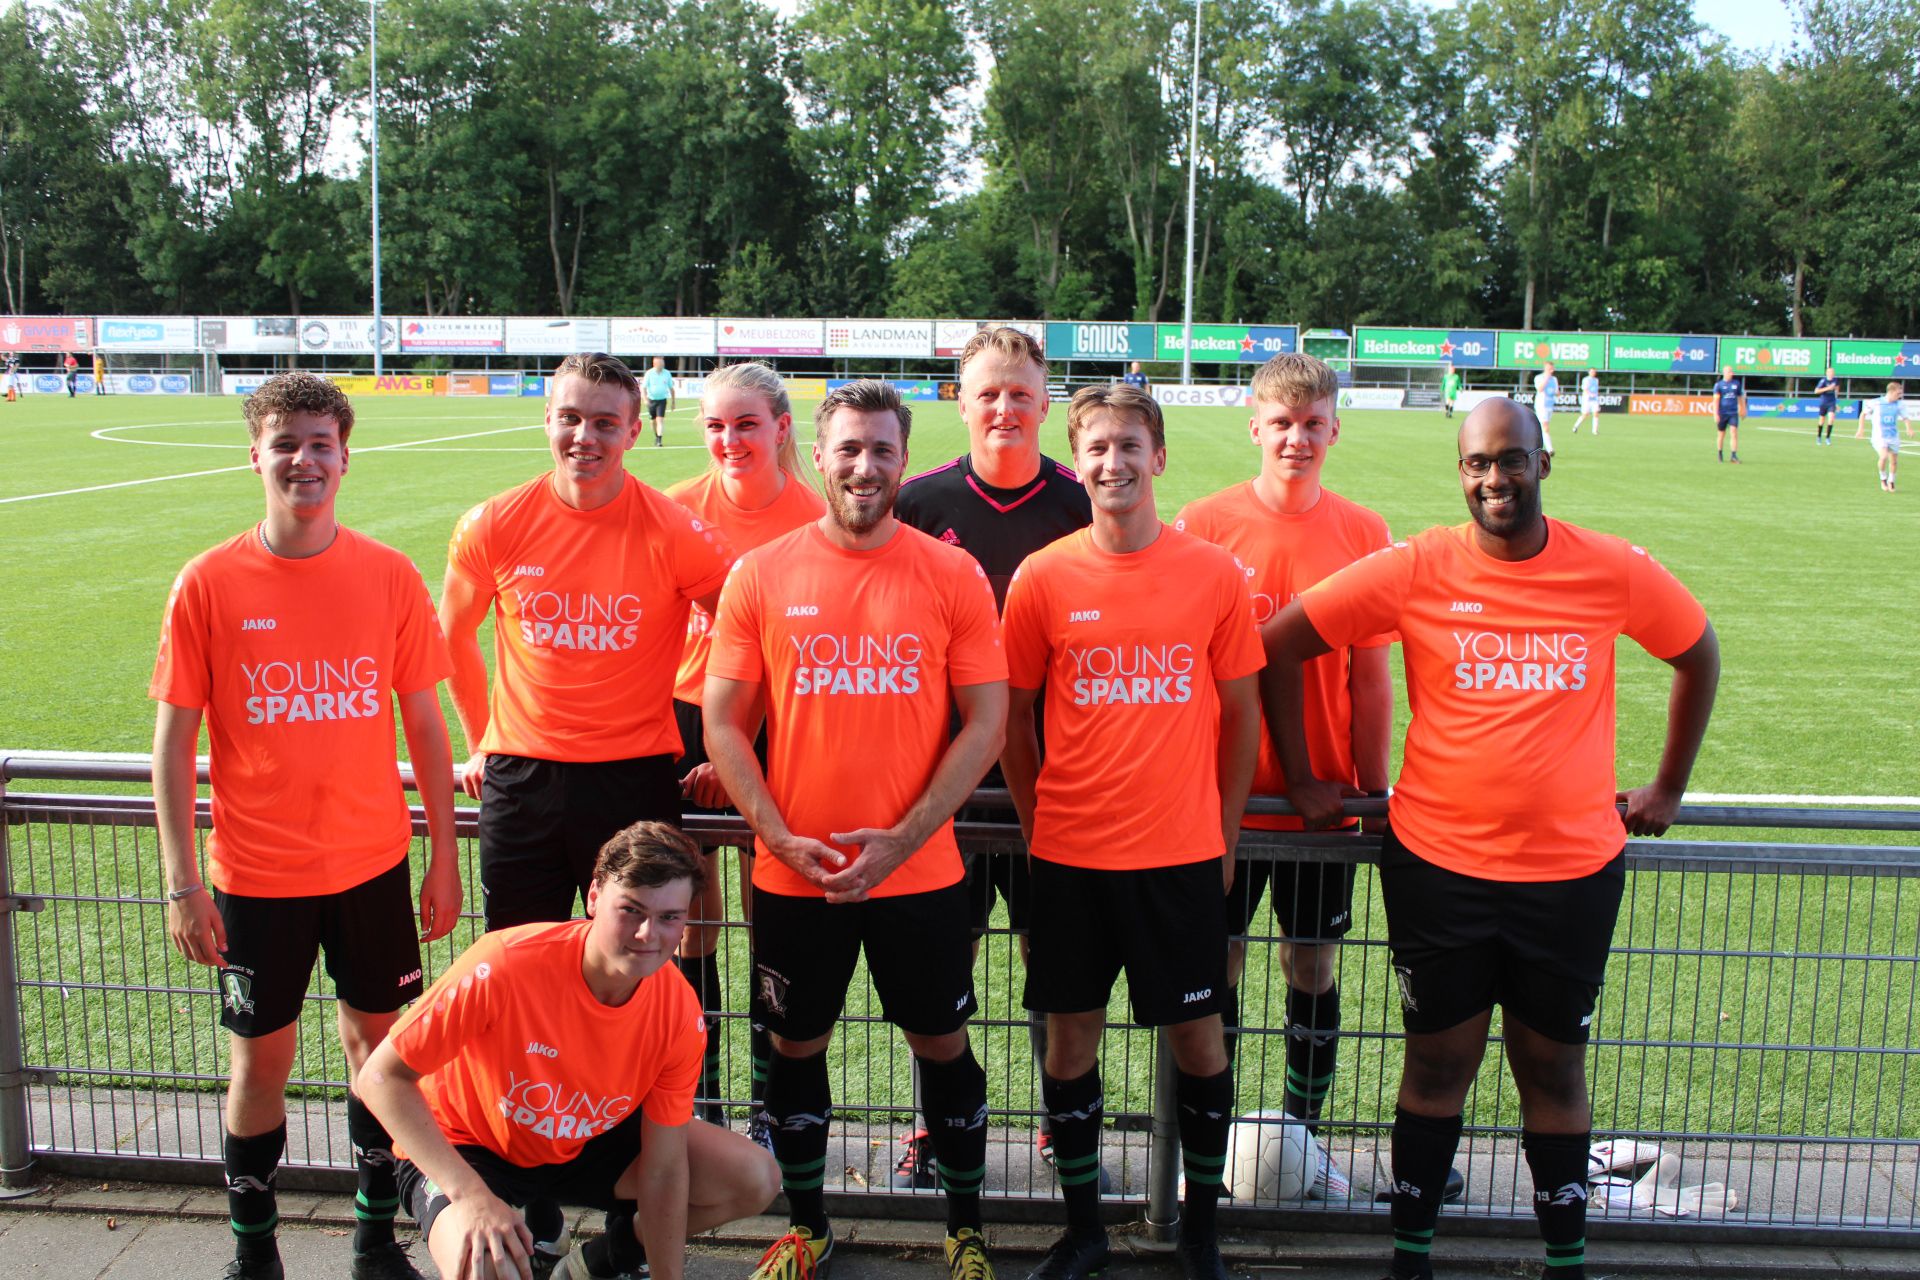 Lees onze blog YoungSparks Marketing debuteert op Beverkoog voetbaltoernooi, natuurlijk bij YoungSparks online marketing uit Alkmaar